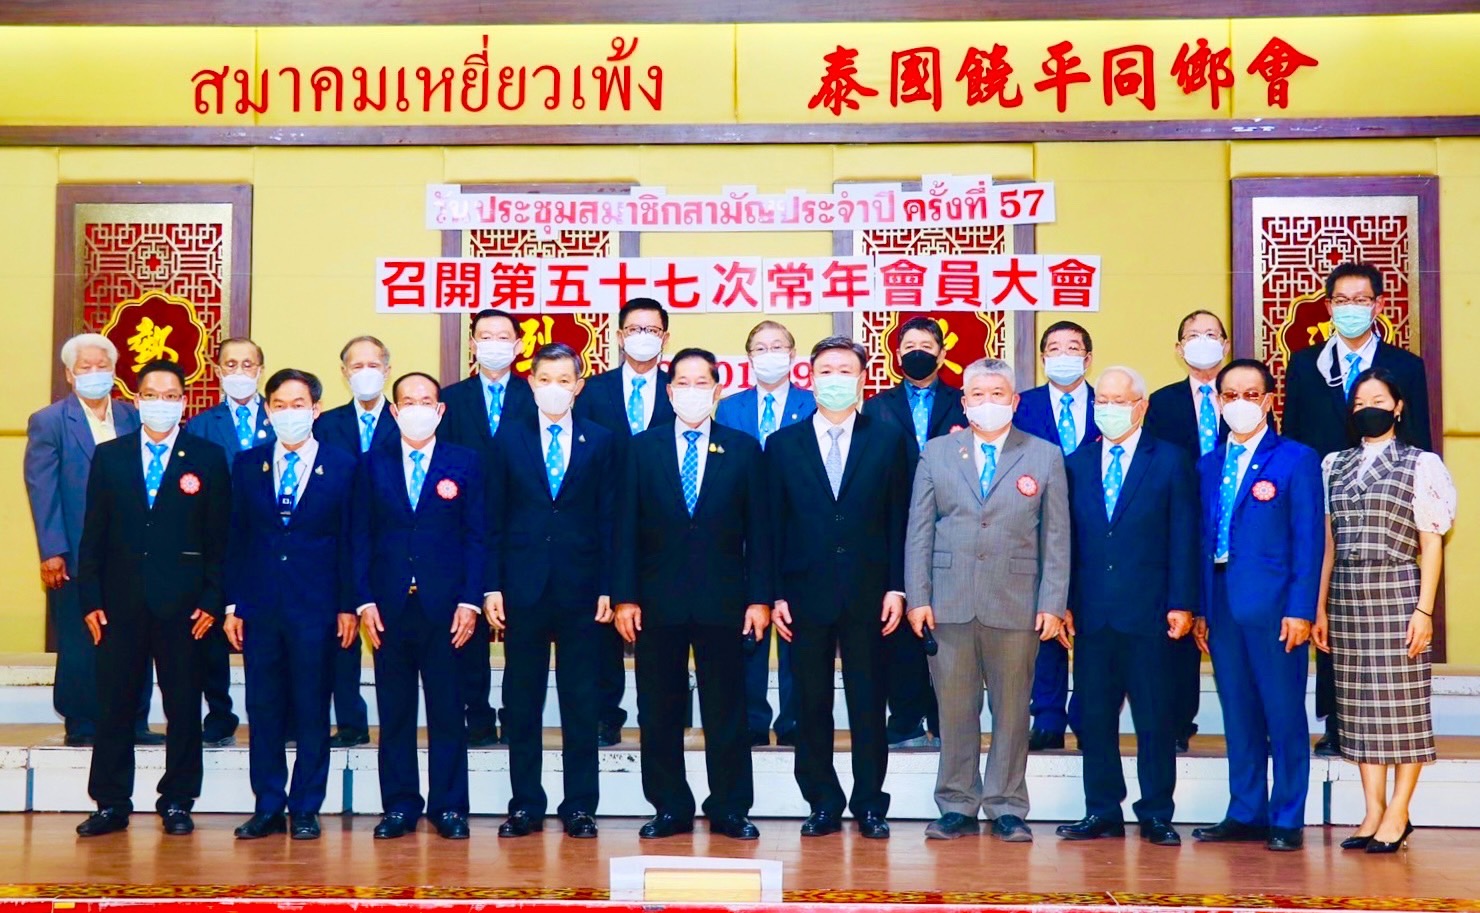 สมาคมเหยี่ยวเพ้งแห่งประเทศไทย จัดประชุมสมาชิกสามัญประจำปี 2564 ครั้งที่ 57